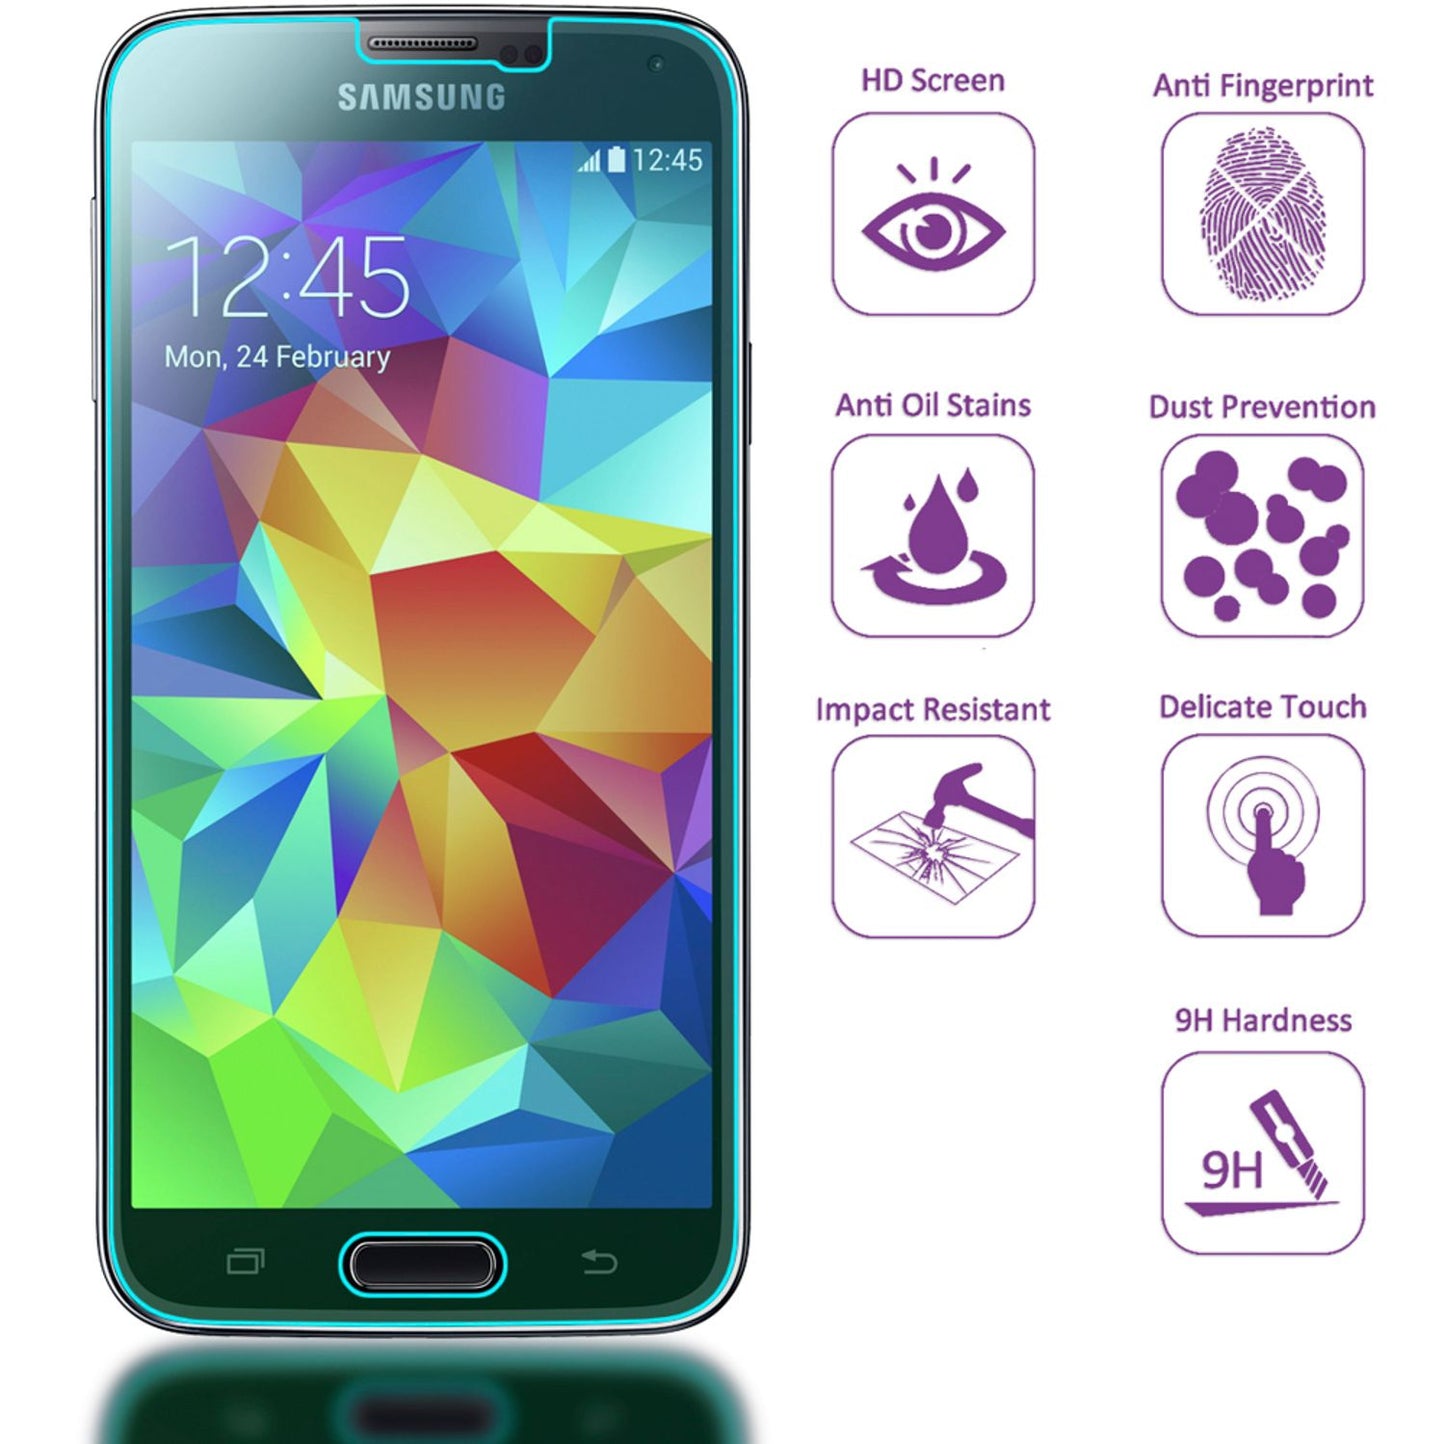 NALIA Schutzglas für Samsung Galaxy S5 / S5 Neo, 9H Full Cover Displayschutz LCD